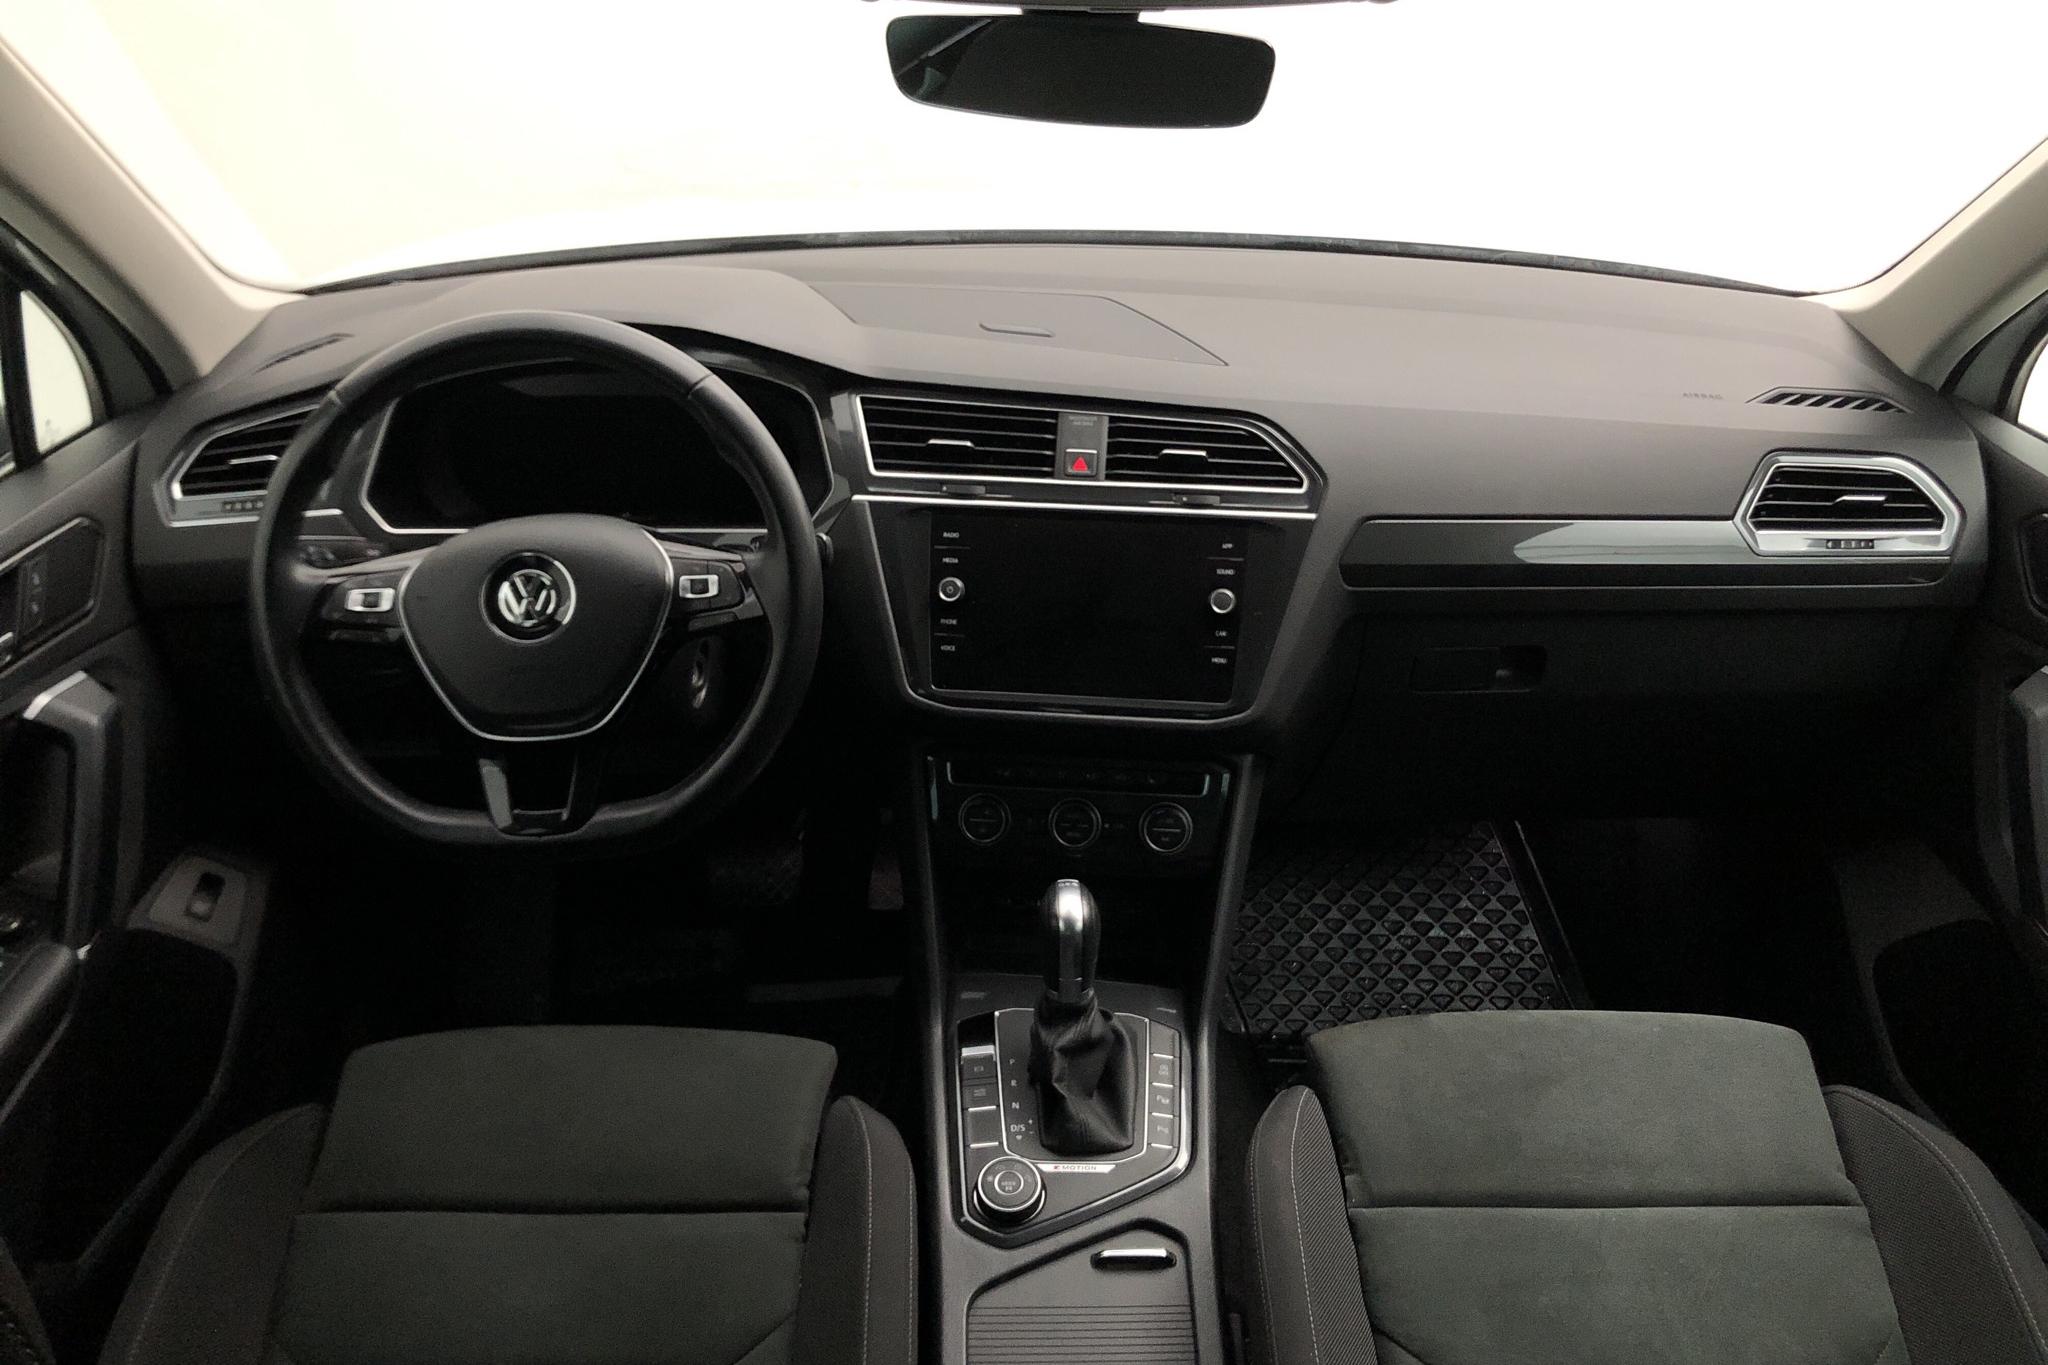 VW Tiguan 2.0 TDI 4MOTION (190hk) - 51 400 km - Automatic - white - 2018